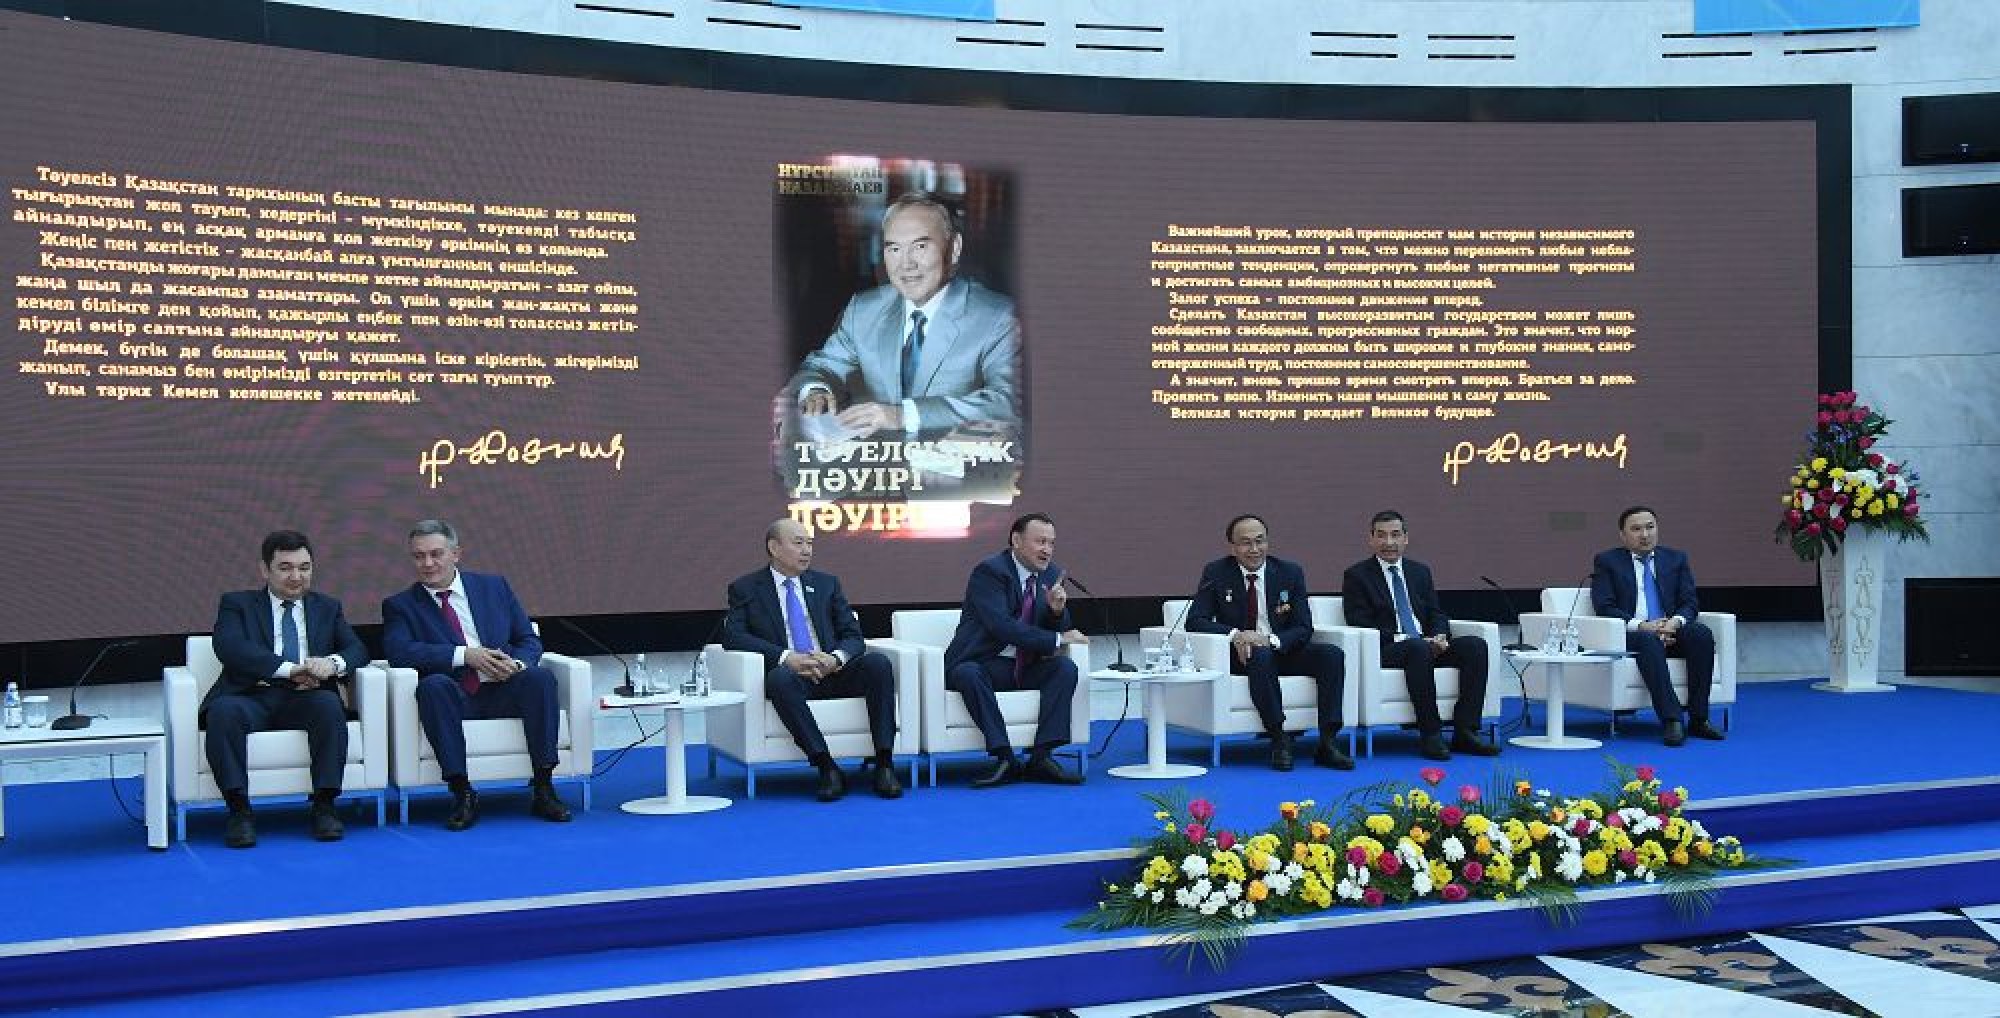 President Nazarbayev’s new book presented in Astana